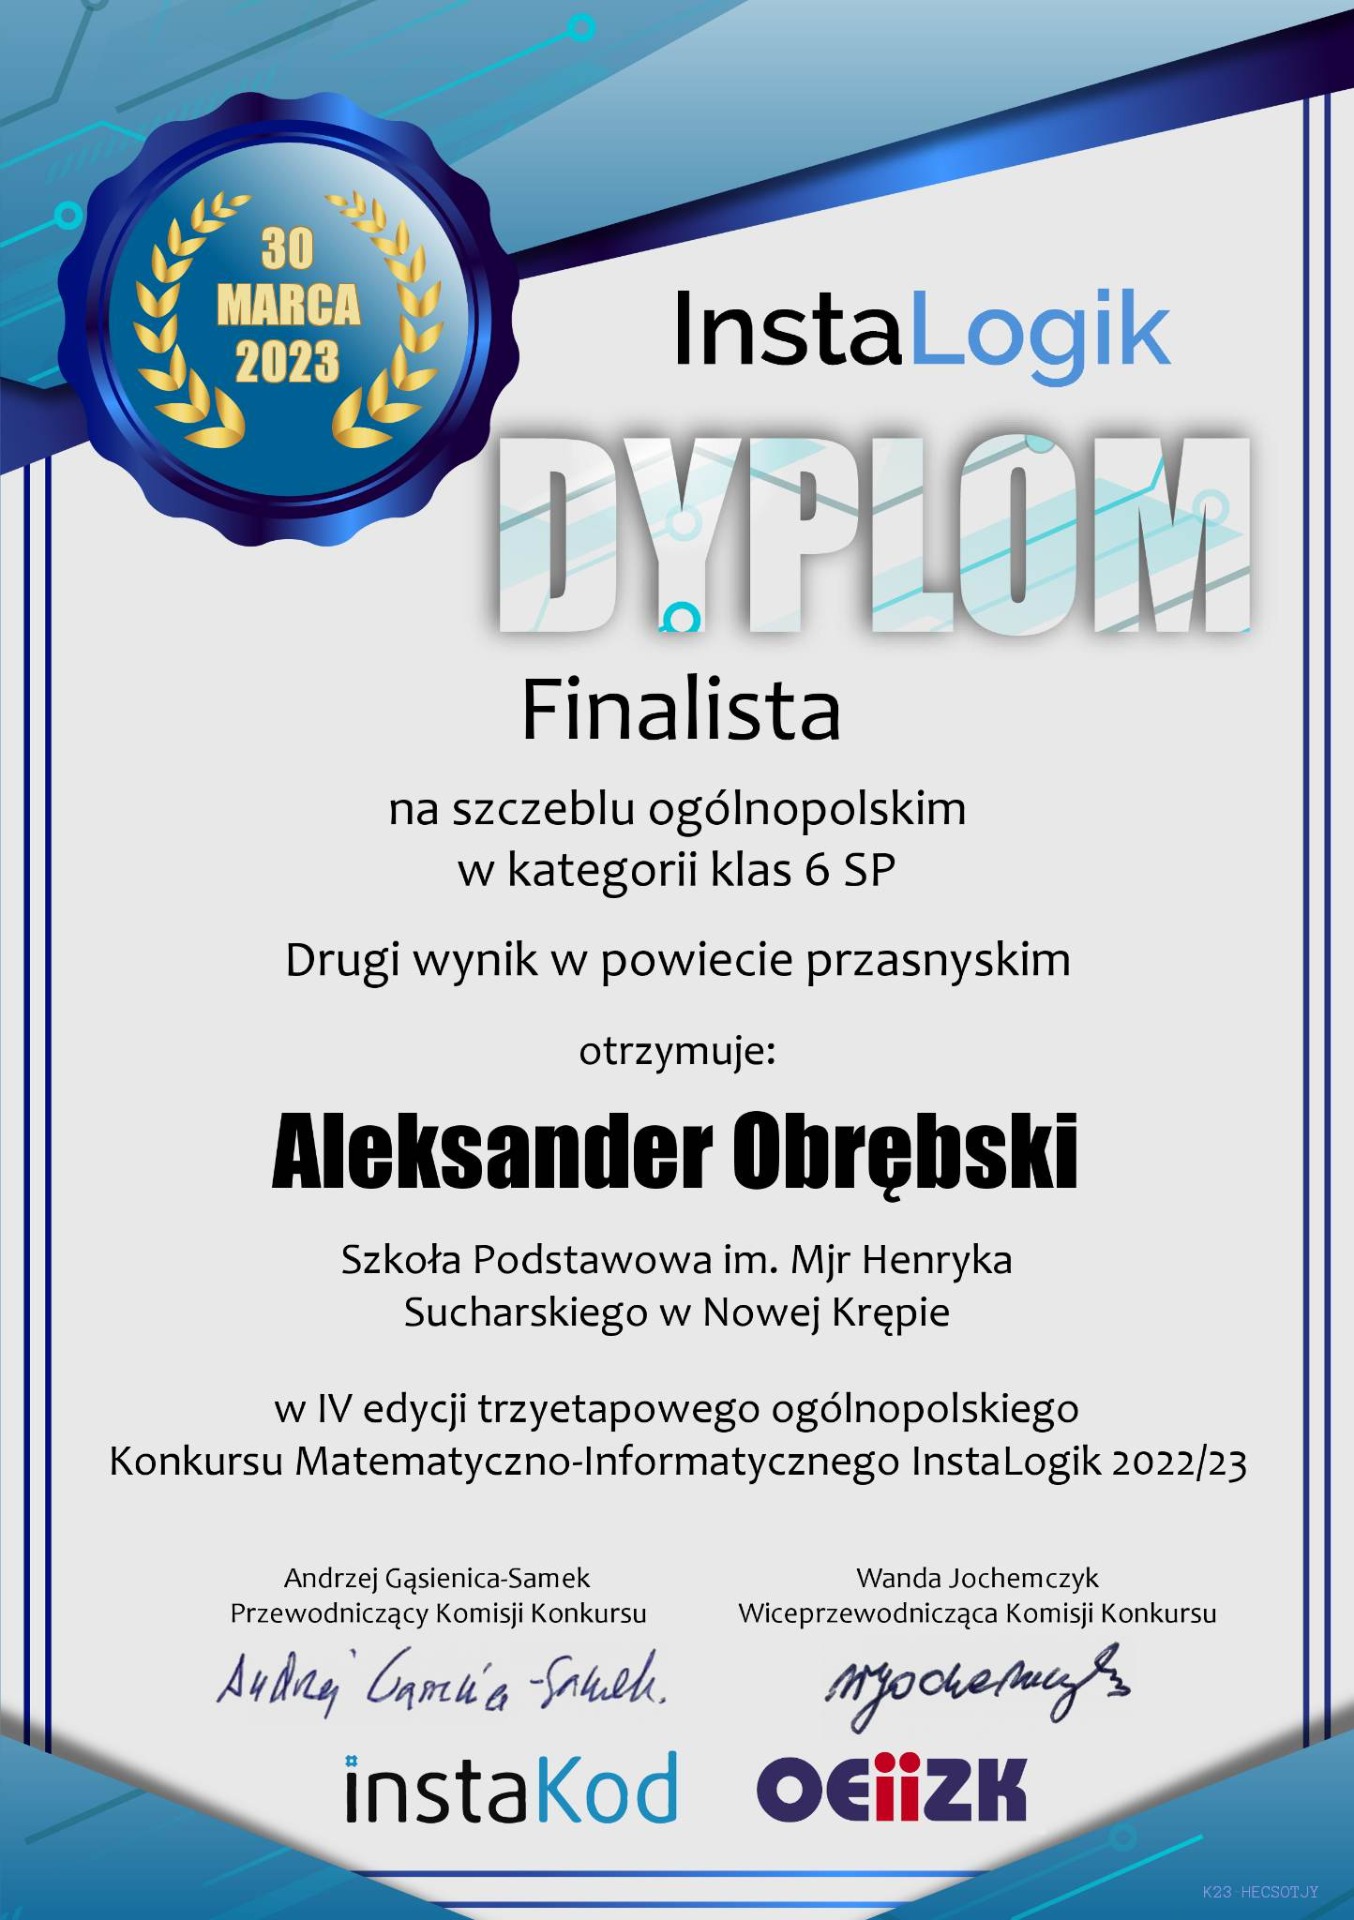 Dyplom dla finalisty na szczeblu ogólnopolskim w kategorii klas 6 za drugi wynik w powiecie przasnyskim dla Aleksandra Obrębskiego.